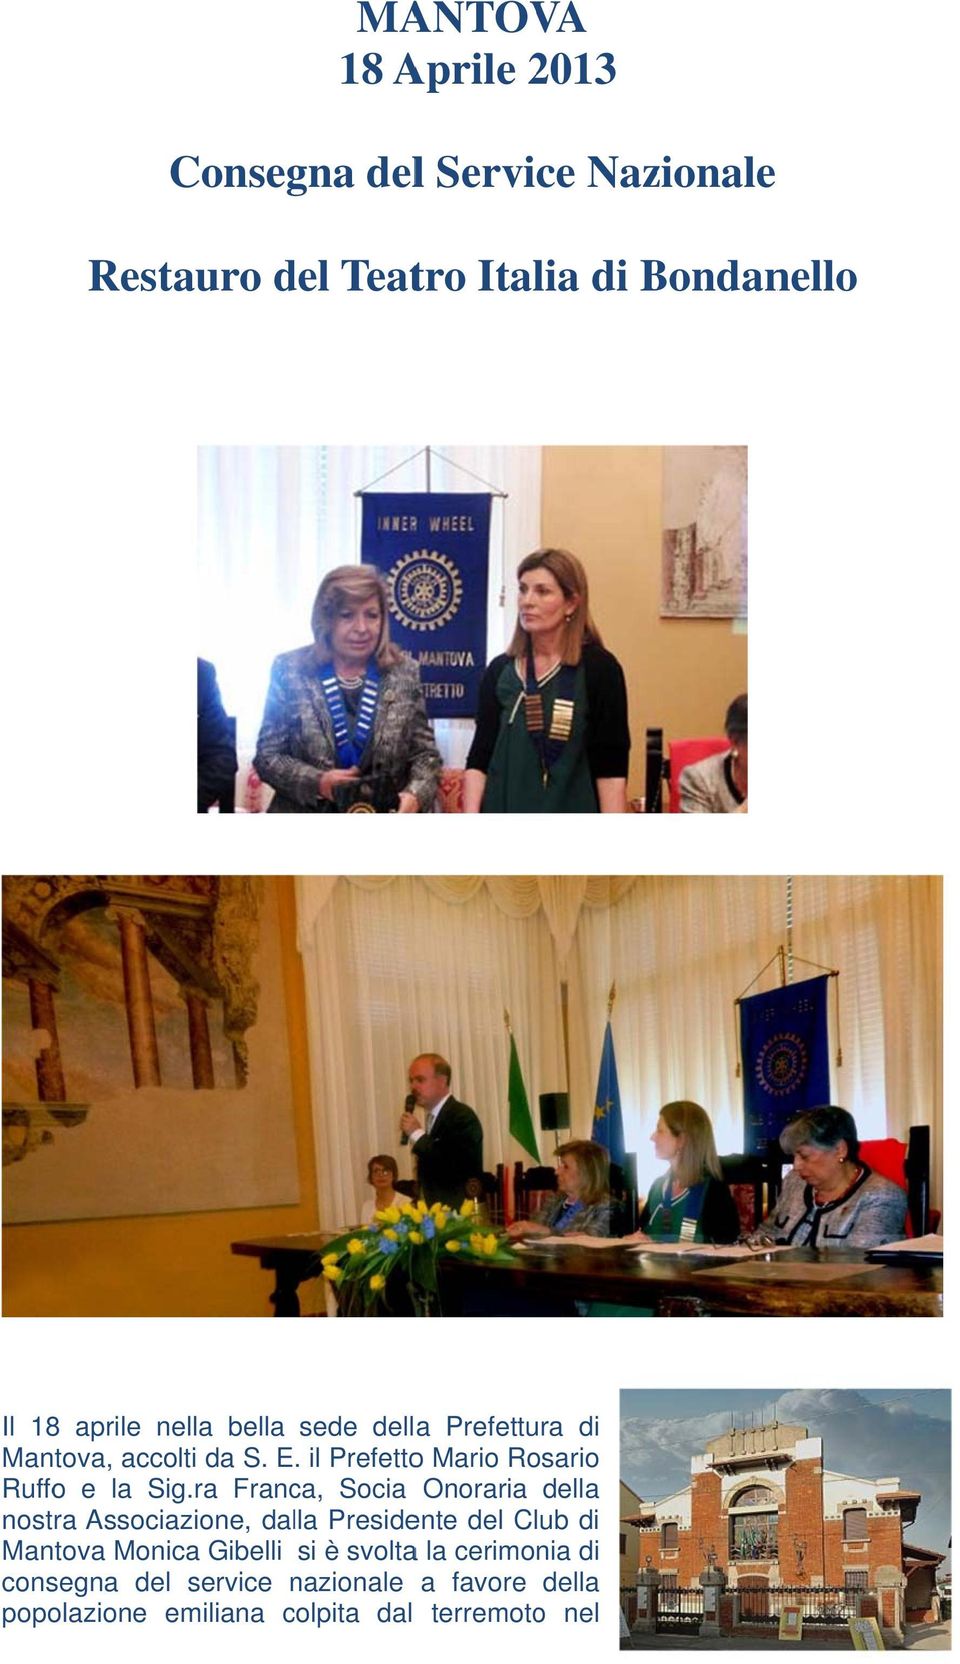 ra Franca, Socia Onoraria del nostra Associazione, dal Presidente del Club Mantova Monica Gibelli si è